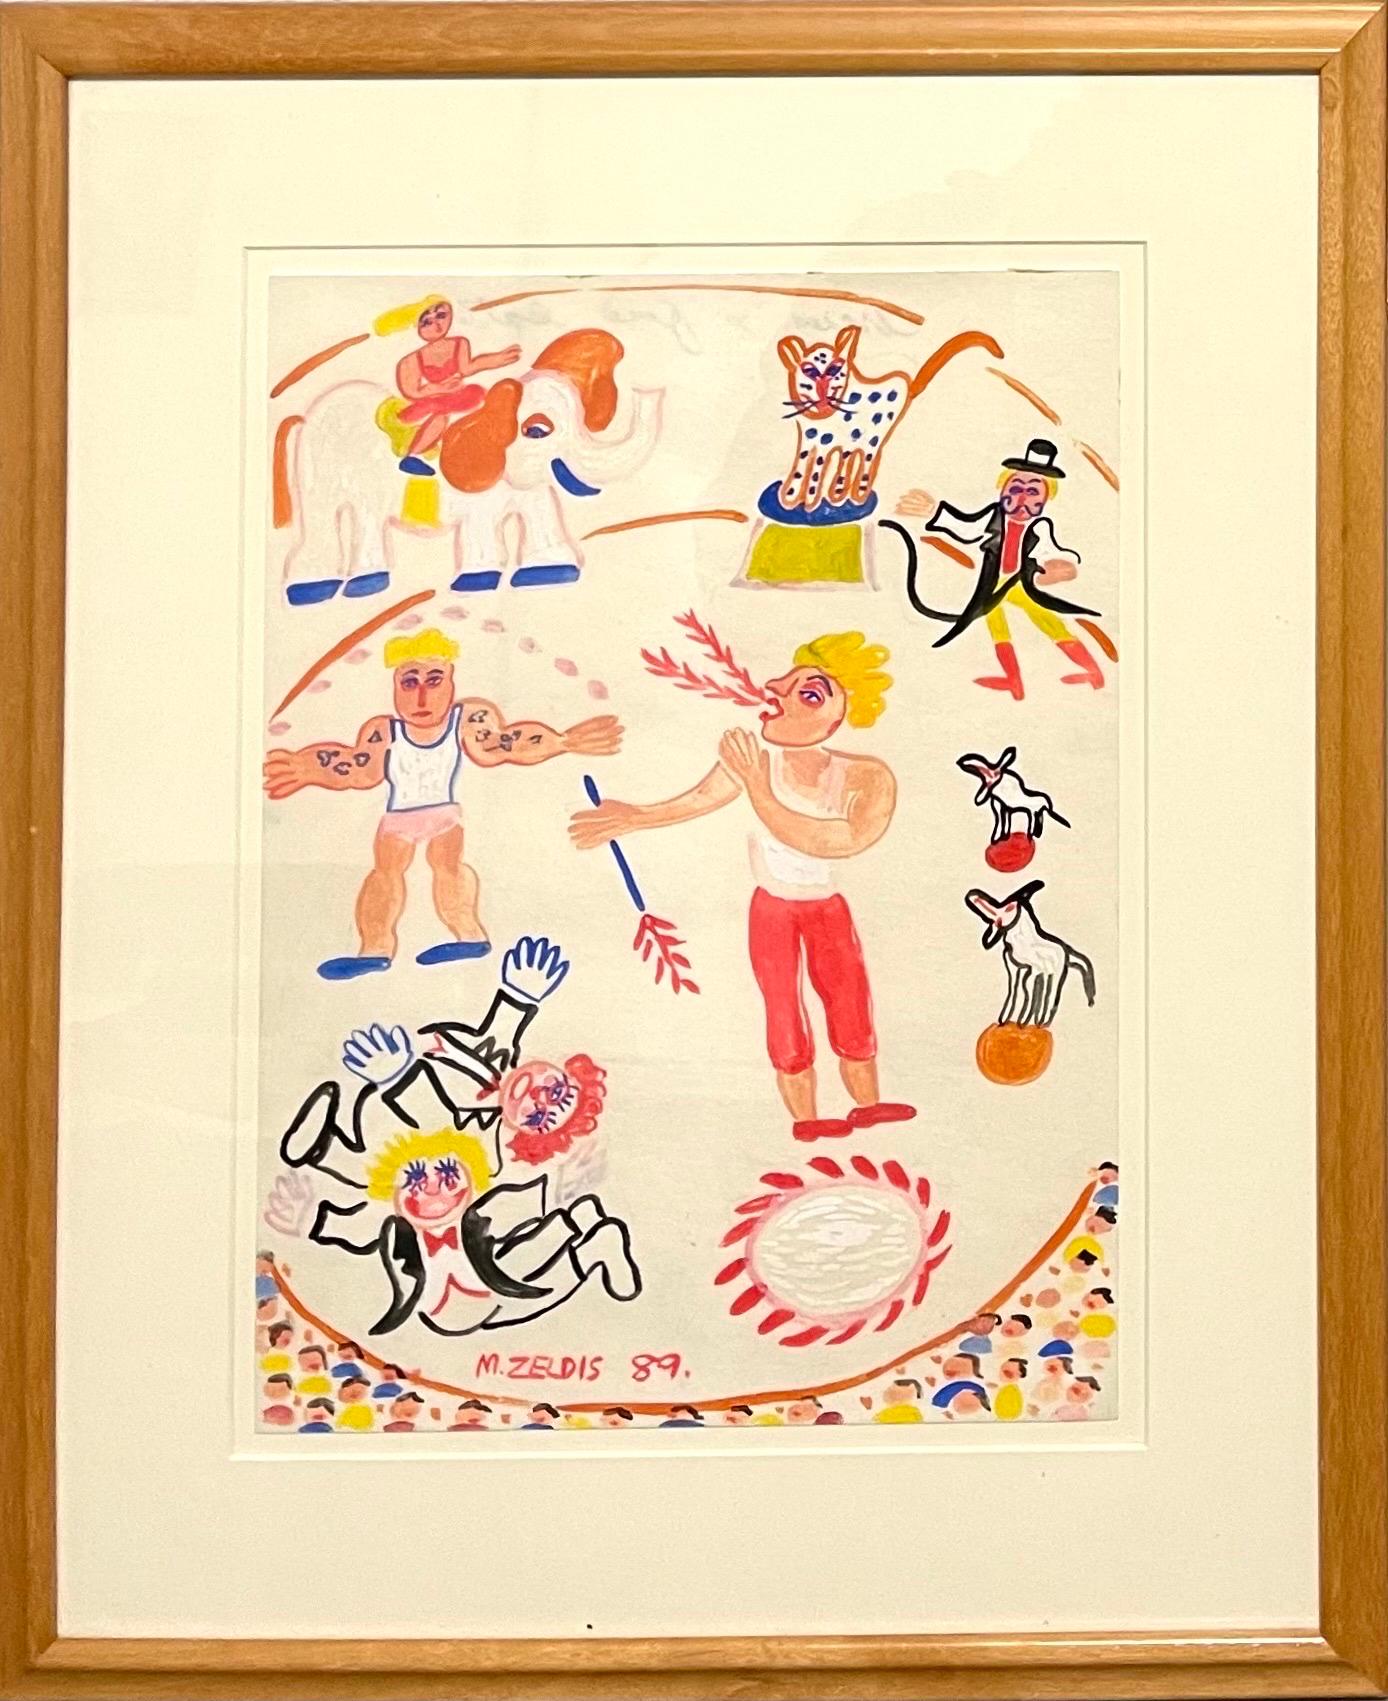 MALCAH ZELDIS
zirkus, Feuerschlucker", 1989, Gouache auf Papier 
Handsigniert und datiert unten in der Mitte, betitelt mit Bleistift auf dem Papier verso
Papier 12''h, 9''b.
Provenienz: Nachlass von Laura Fisher, New York, NY. (eine bekannte